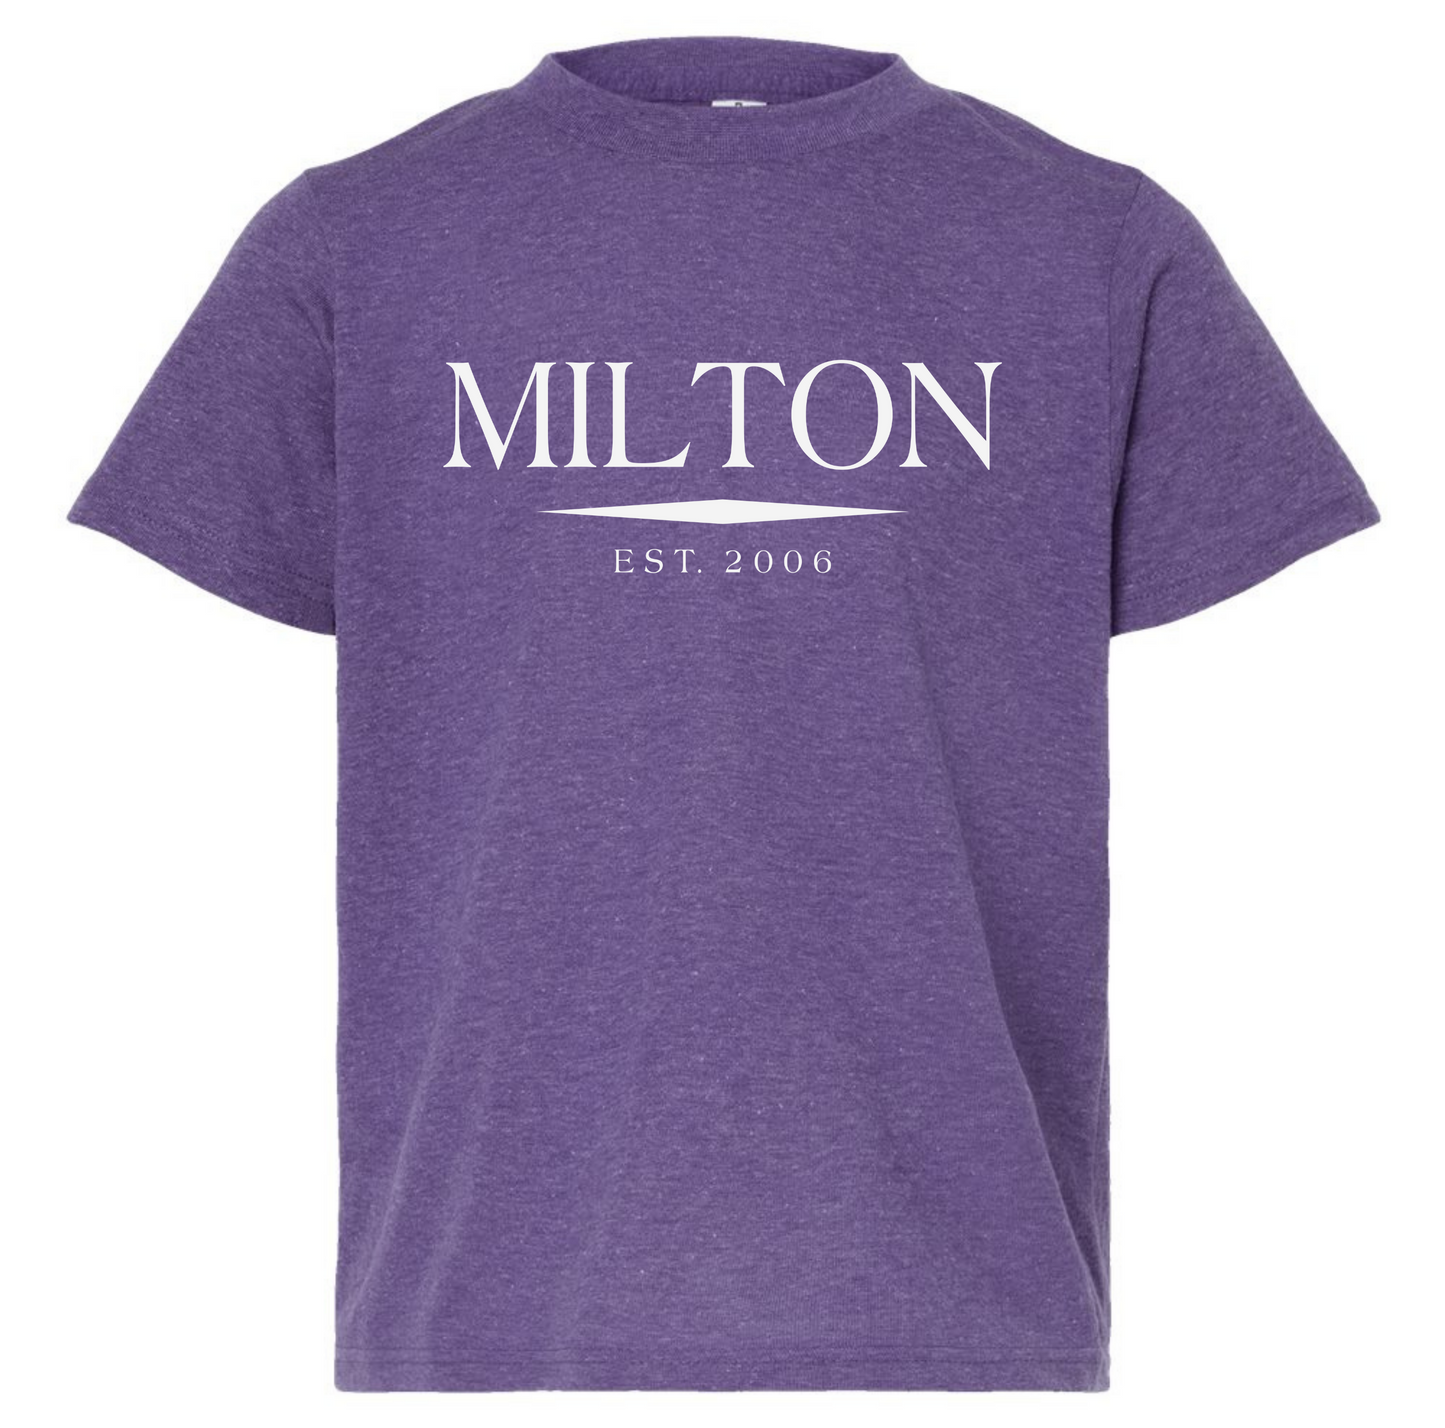 Milton T-Shirt